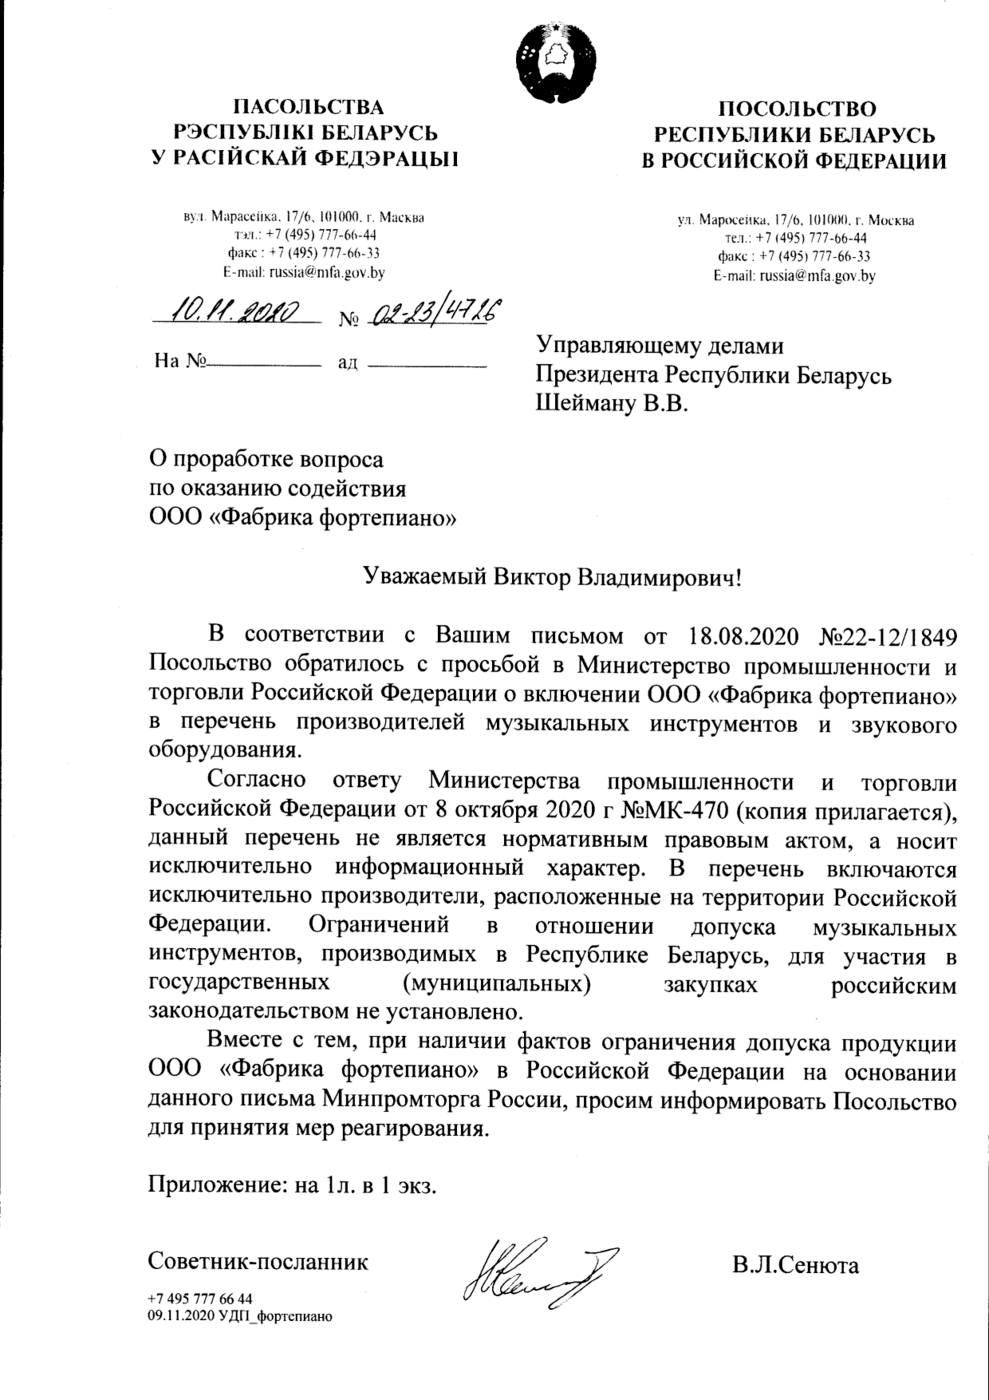 Письмо от минестерства промышленности и торговли Российской Федерации